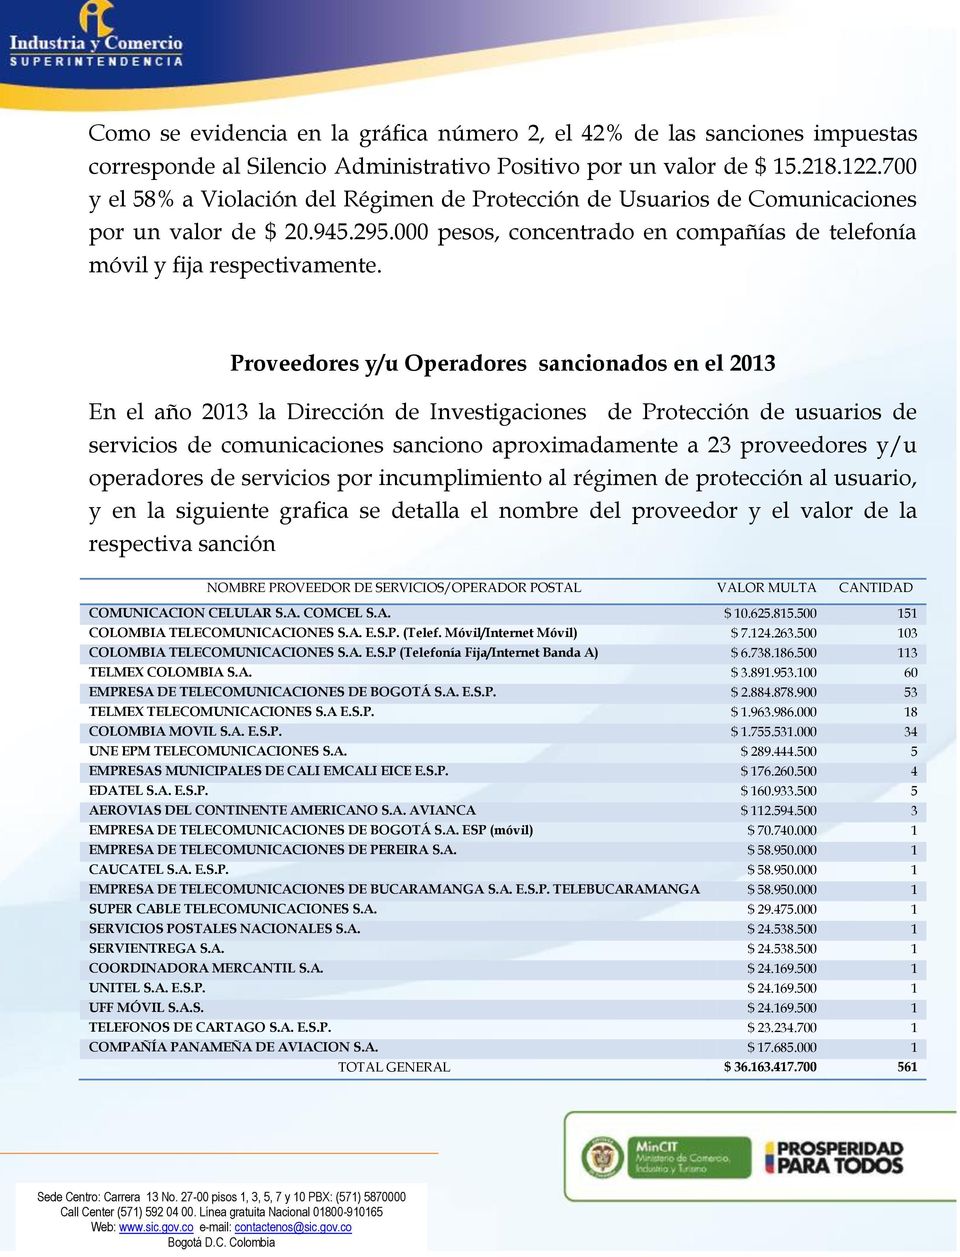 Proveedores y/u Operadores sancionados en el 2013 En el año 2013 la Dirección de Investigaciones de Protección de usuarios de servicios de comunicaciones sanciono aproximadamente a 23 proveedores y/u